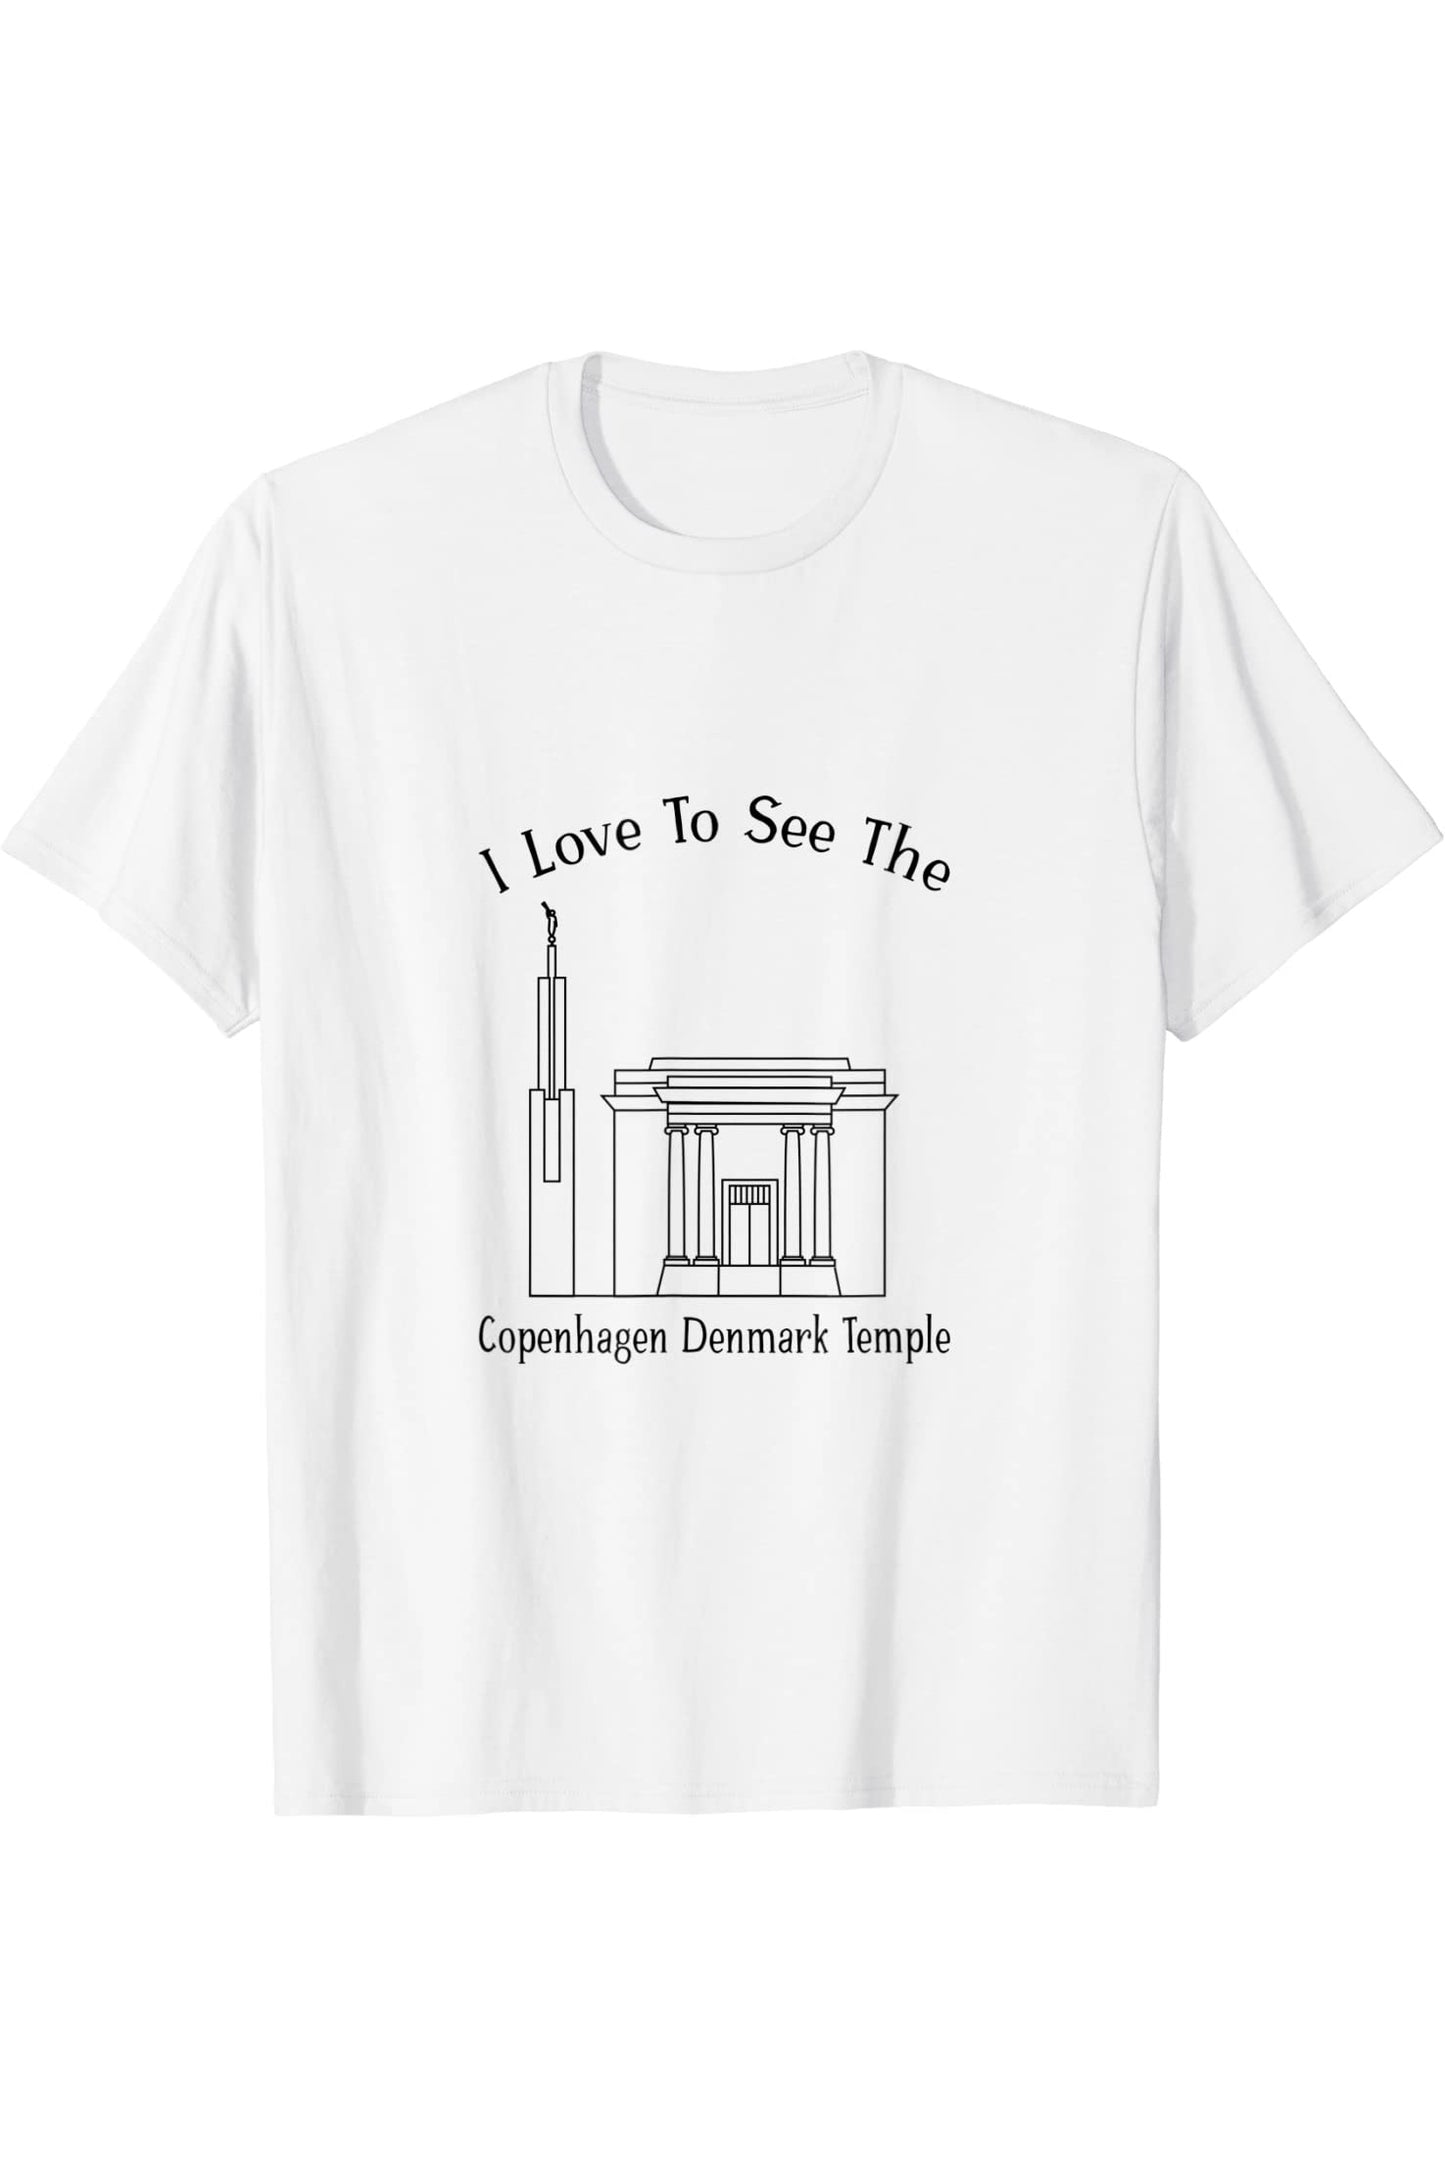 Copenaghen Danimarca Tempio, amo vedere il mio tempio, felice T-Shirt